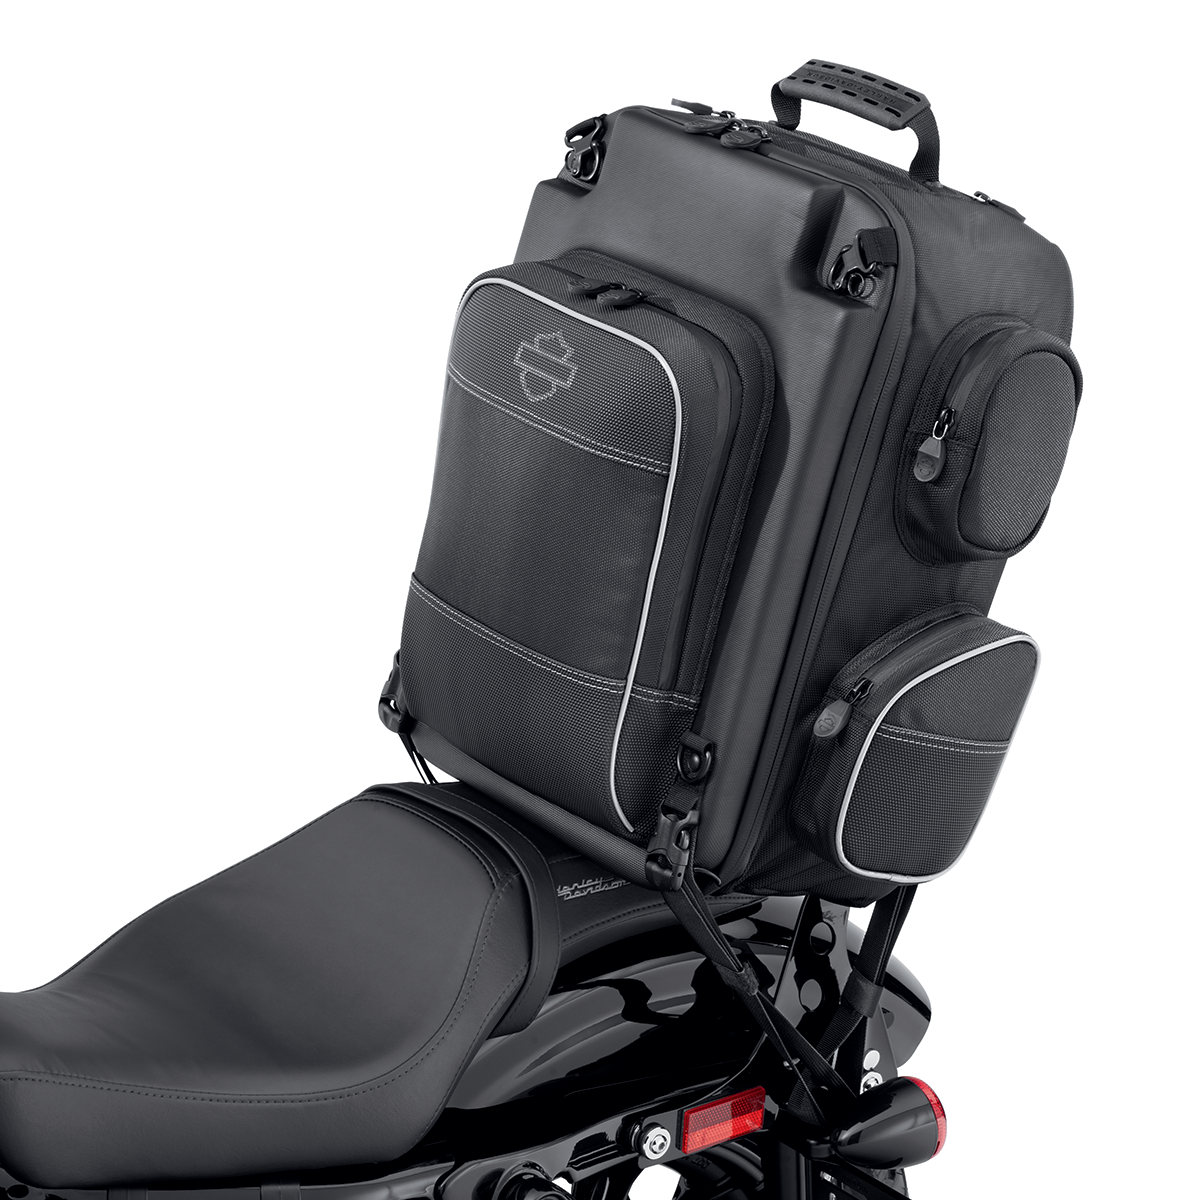 Harley-Davidson Onyx™ Premium Luggage -  Weekender Bag